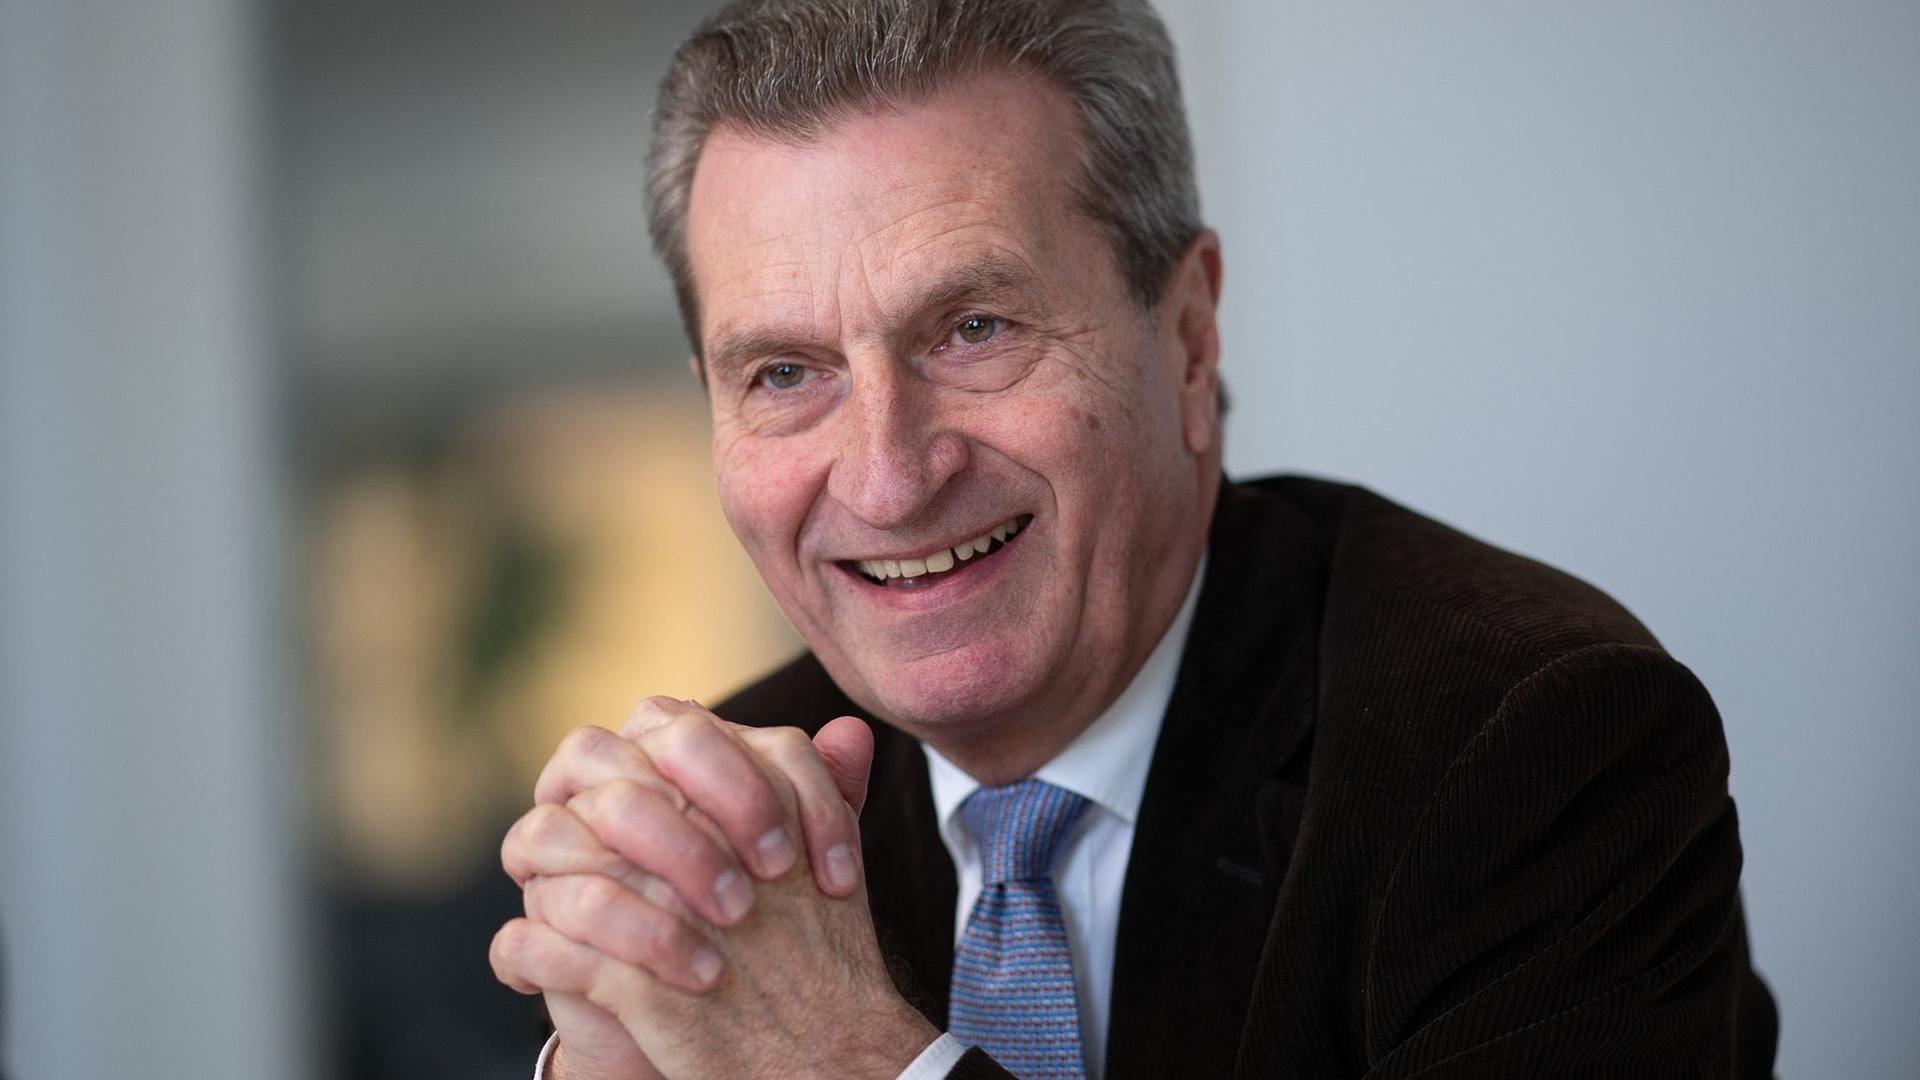 Günther Oettinger (CDU), ehemaliger EU-Kommissar und ehemaliger Ministerpräsident des Landes Baden-Württemberg, spricht während eines Interviews mit Journalisten der Deutschen Presse-Agentur.